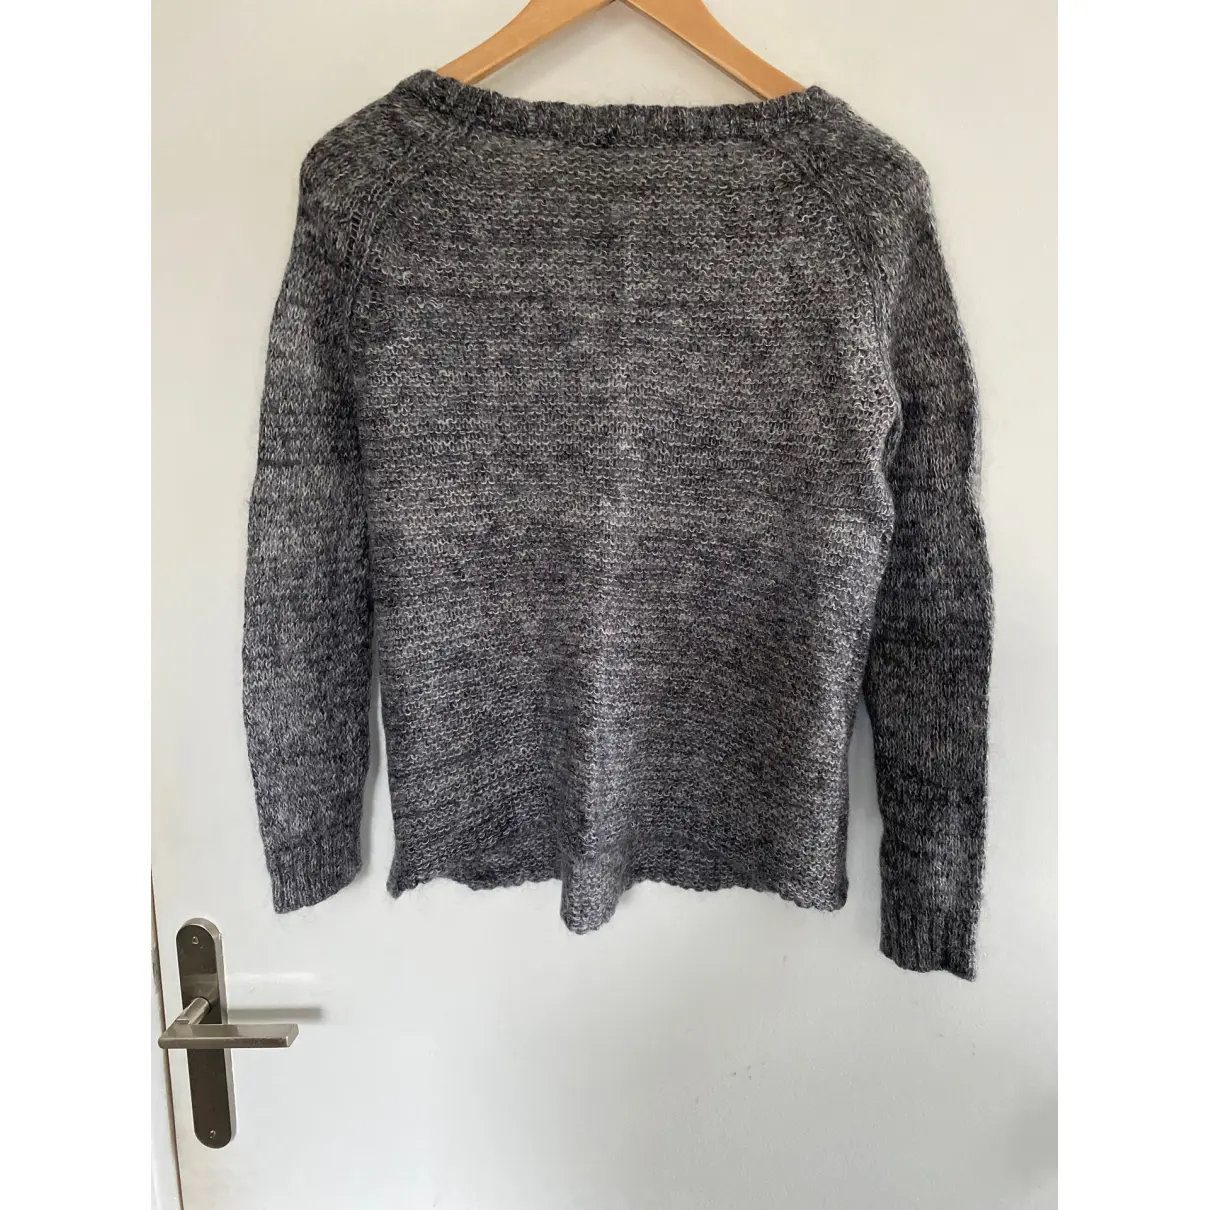 Buy Hartford Wool jumper online